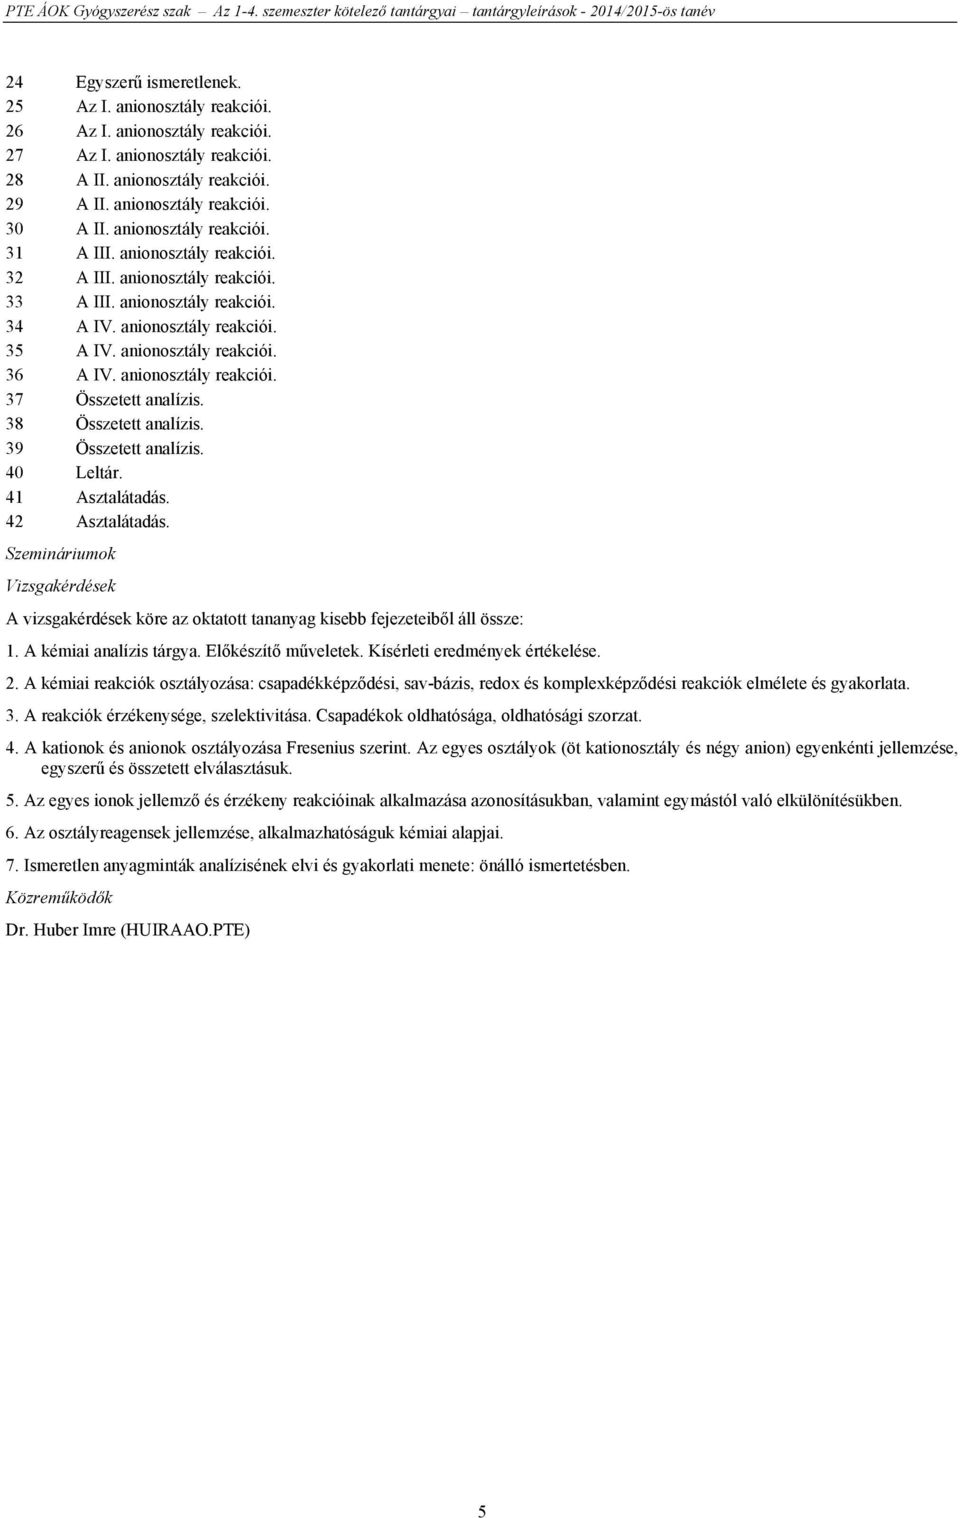 Az 1-4. szemeszter kötelező tantárgyai és kritérium követelményei - PDF  Ingyenes letöltés